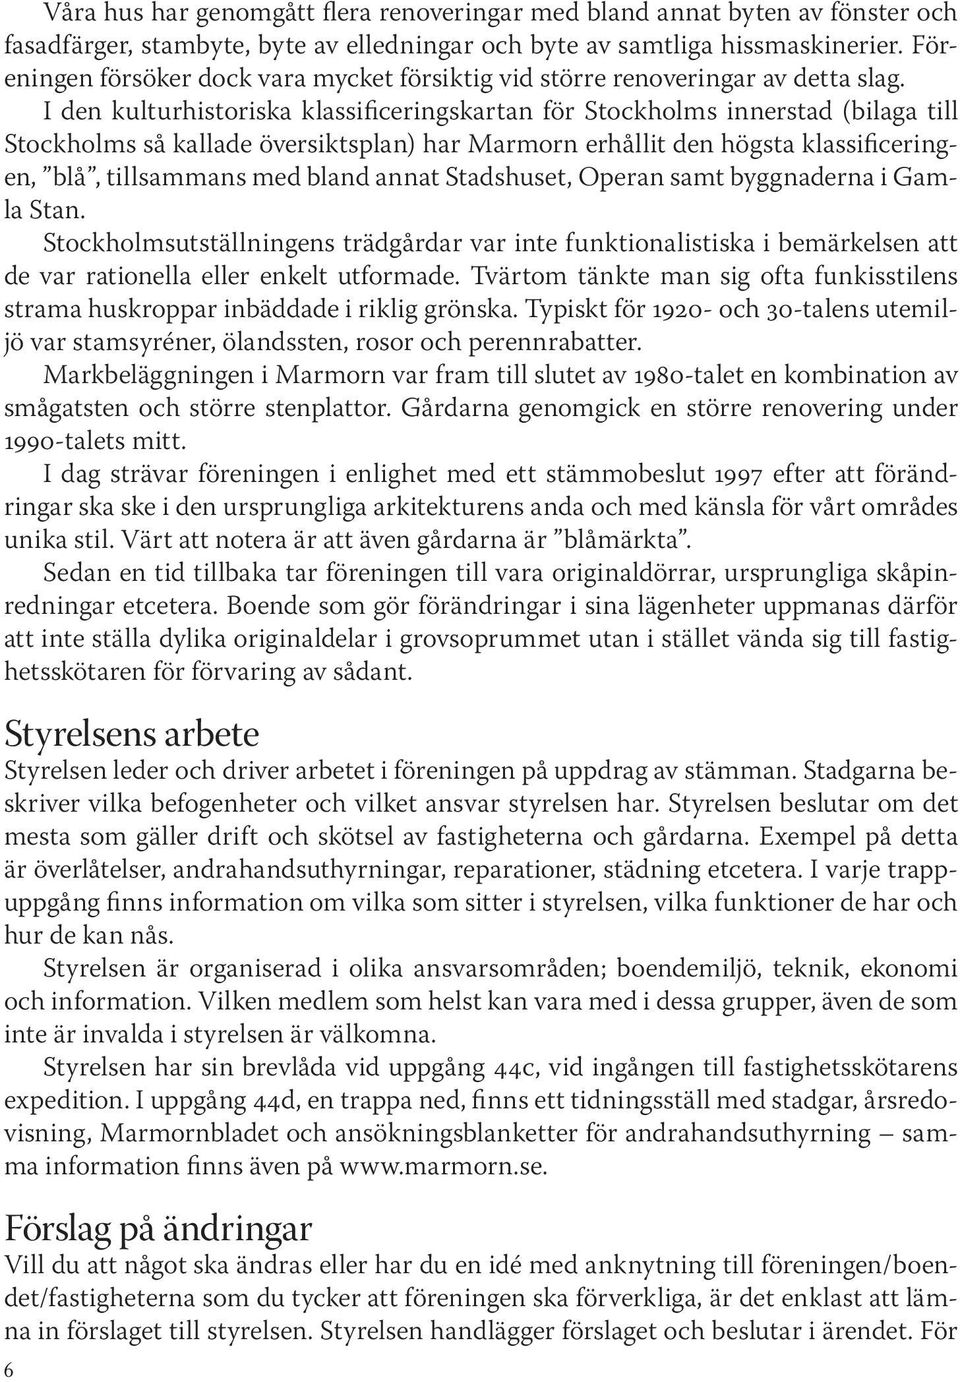 I den kulturhistoriska klassiiceringskartan ör Stockholms innerstad (bilaga till Stockholms så kallade översiktsplan) har Marmorn erhållit den högsta klassiiceringen, blå, tillsammans med bland annat